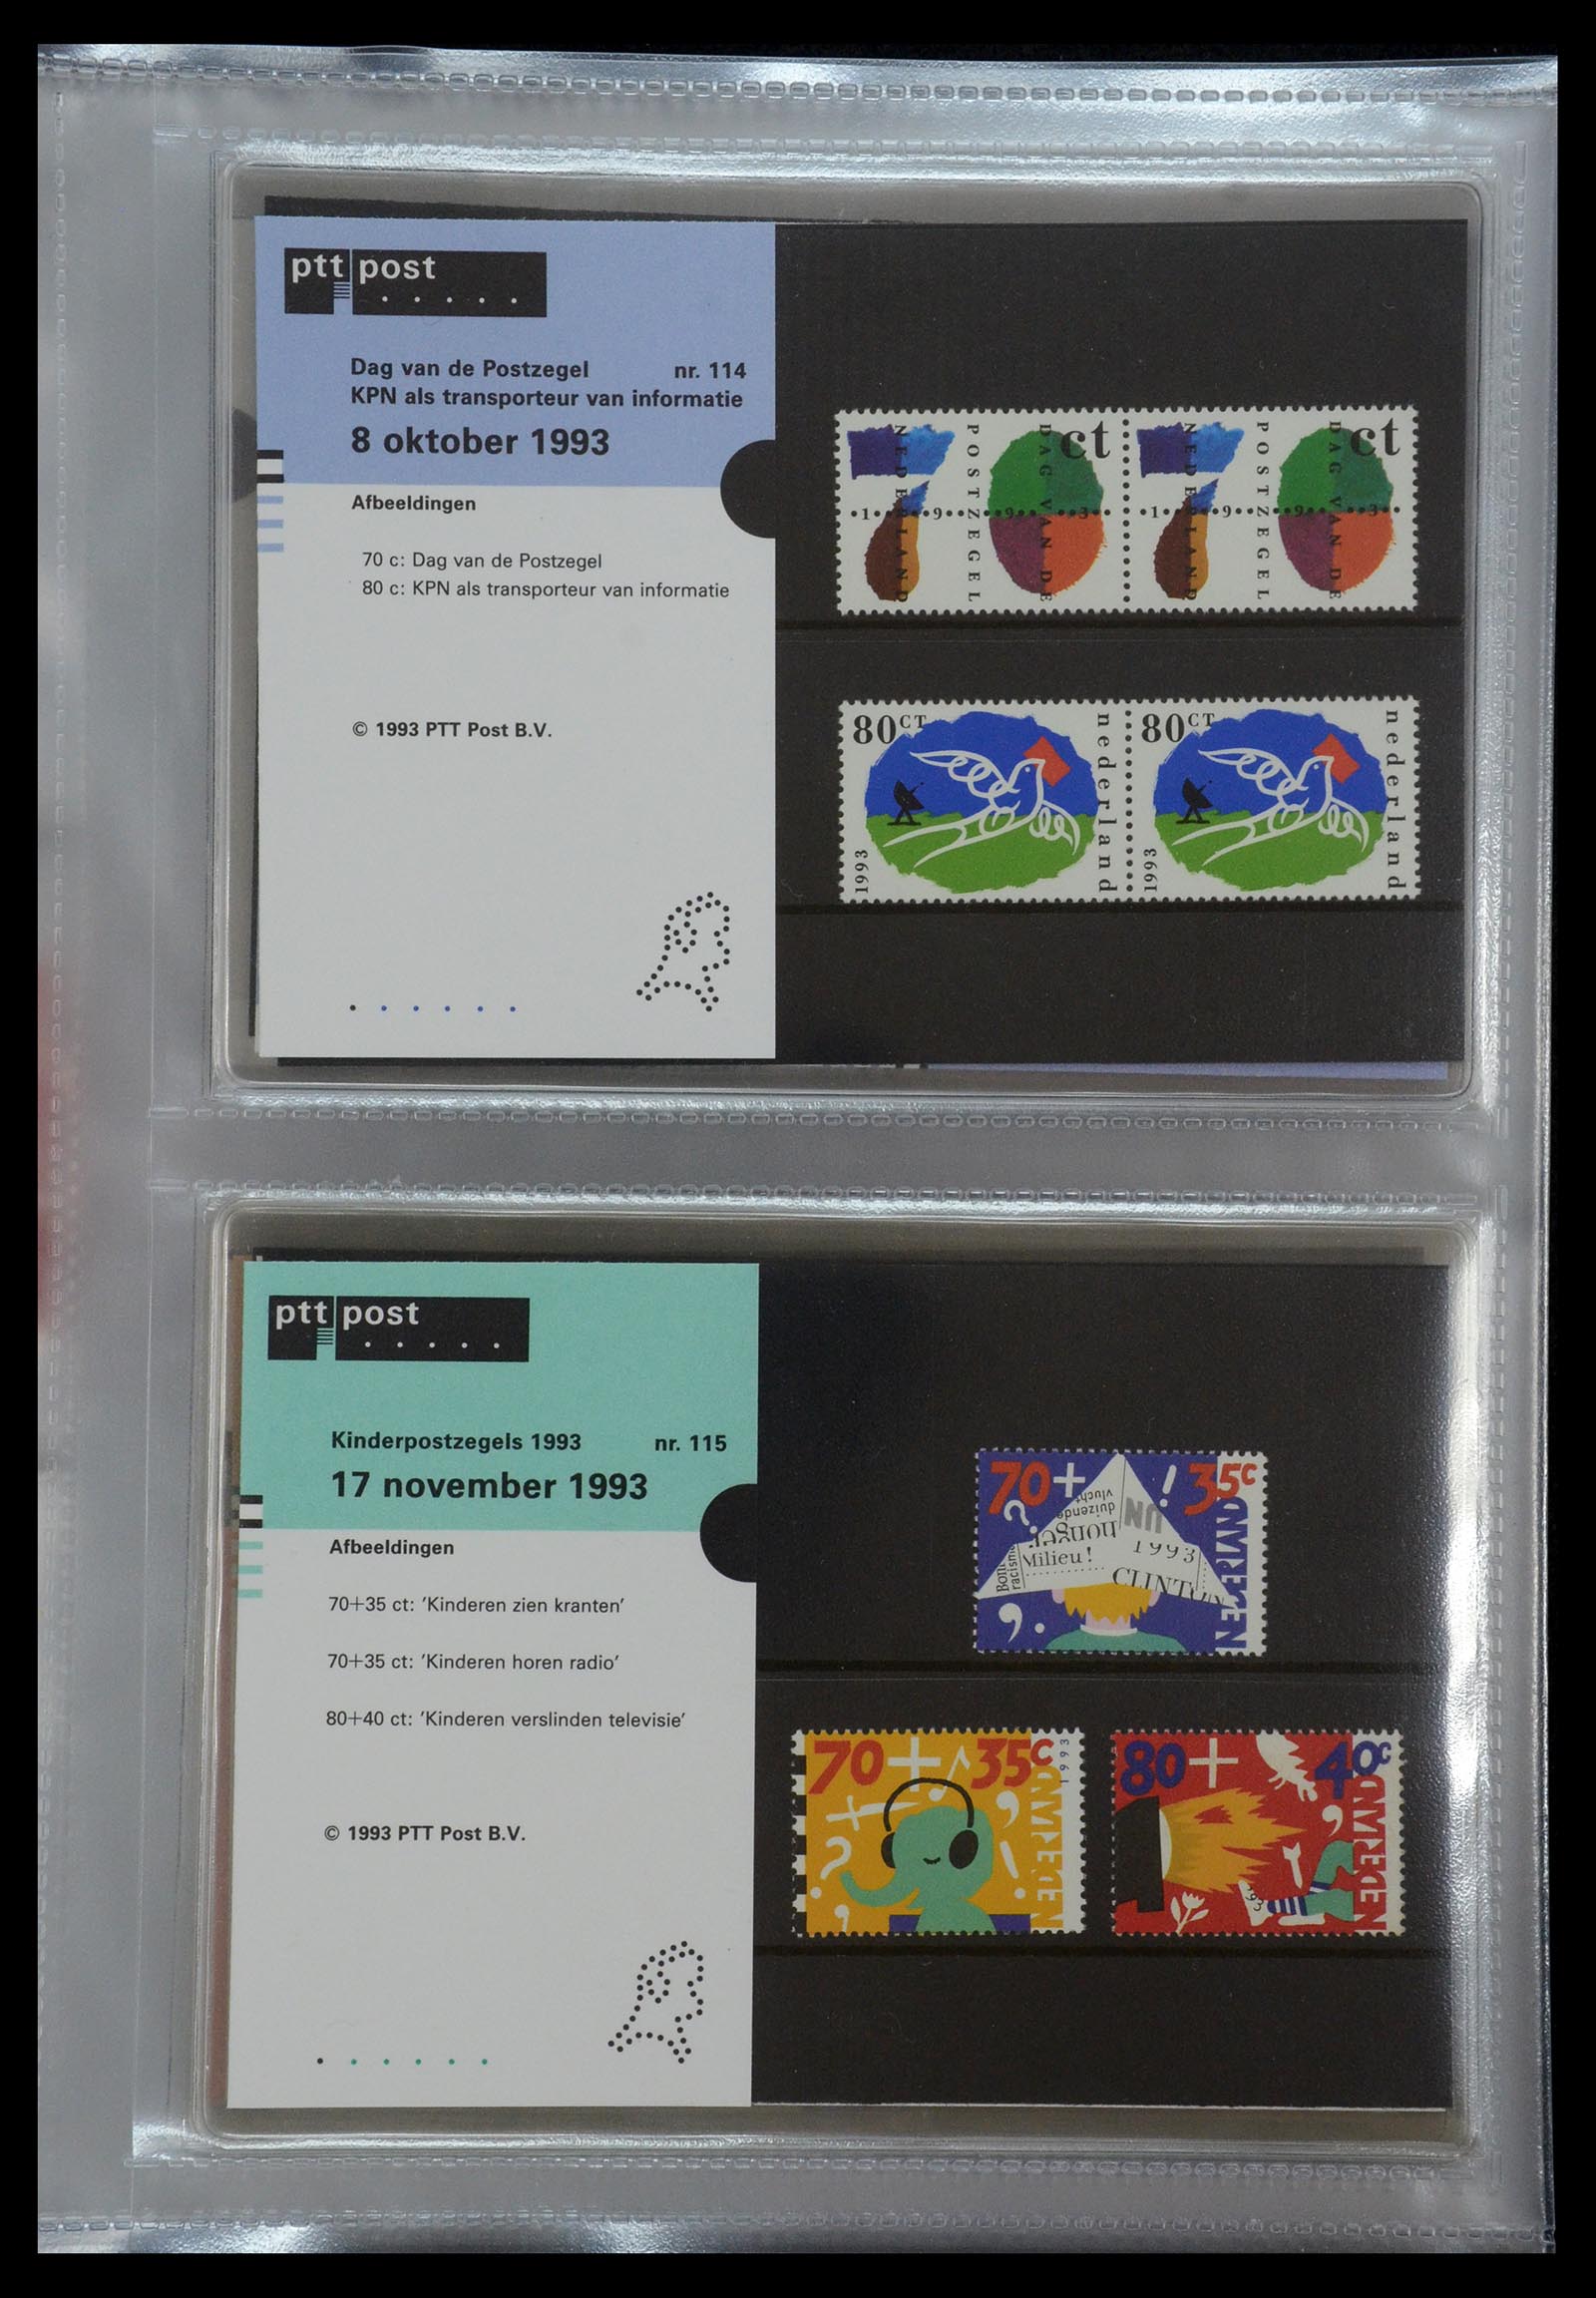 35144 059 - Stamp Collection 35144 Netherlands PTT presentation packs 1982-2021!